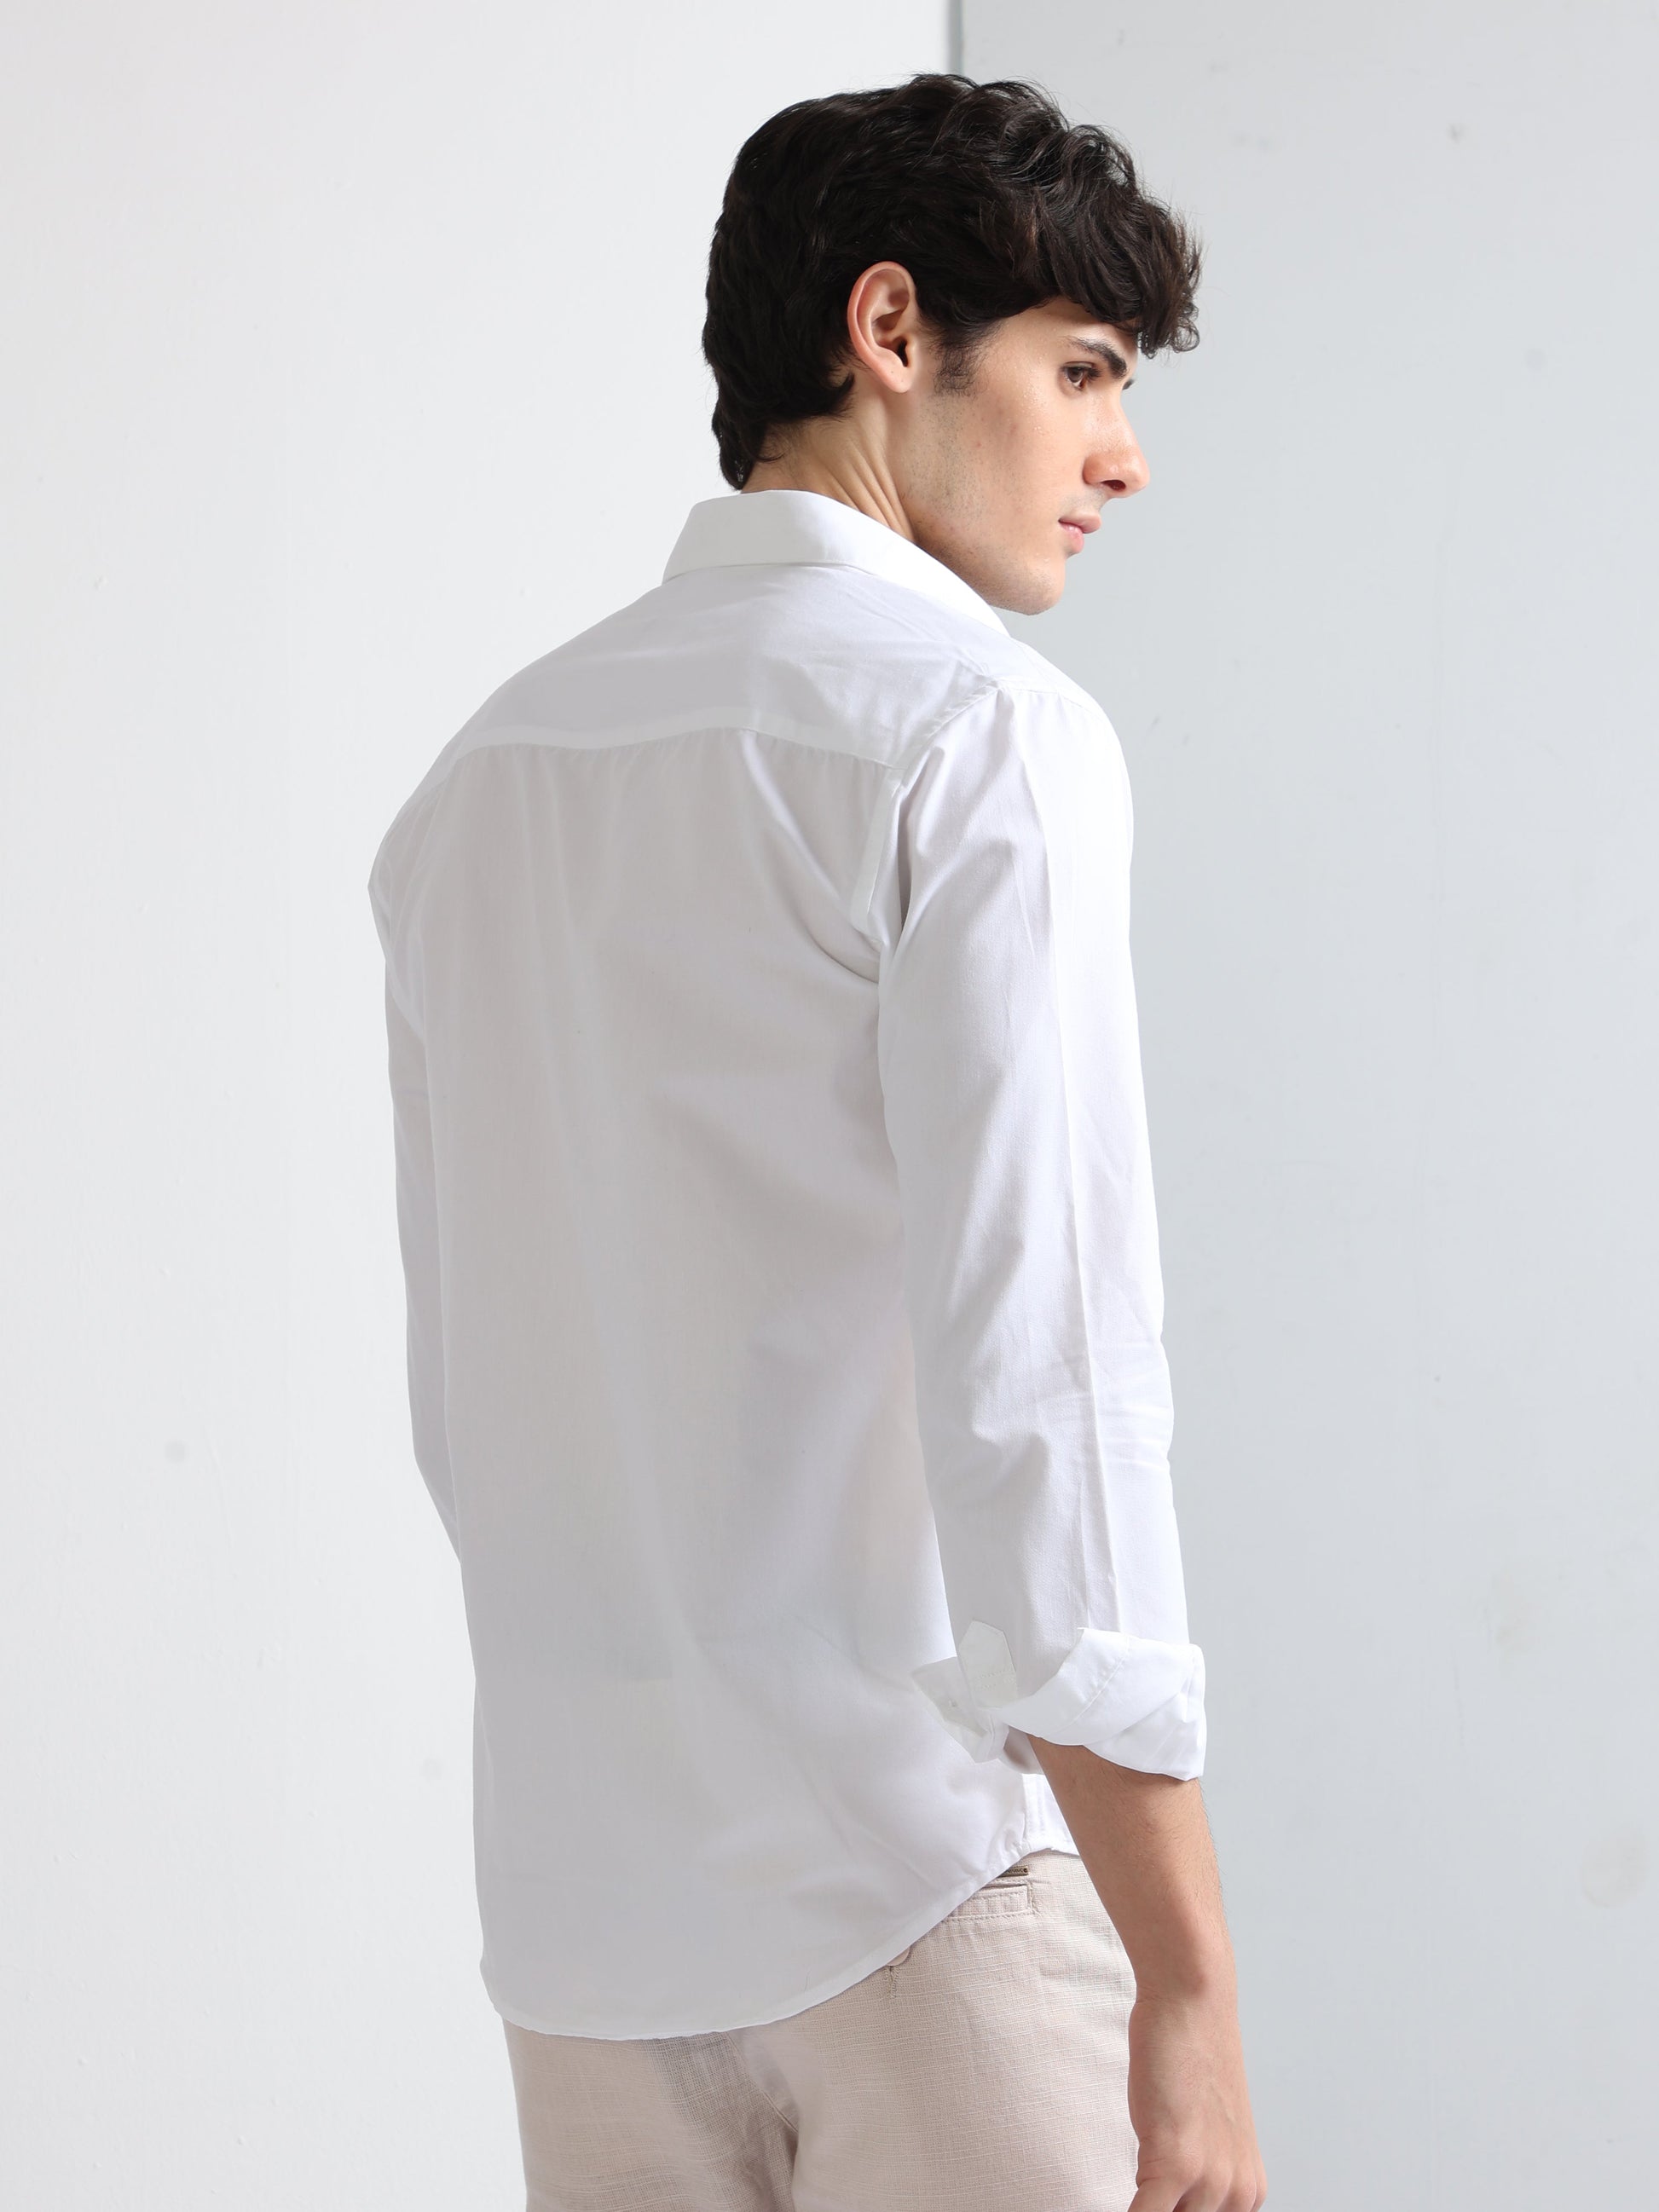 Buy Finest Popline Corduroy Pocket Mens Stylish Shirt Online.